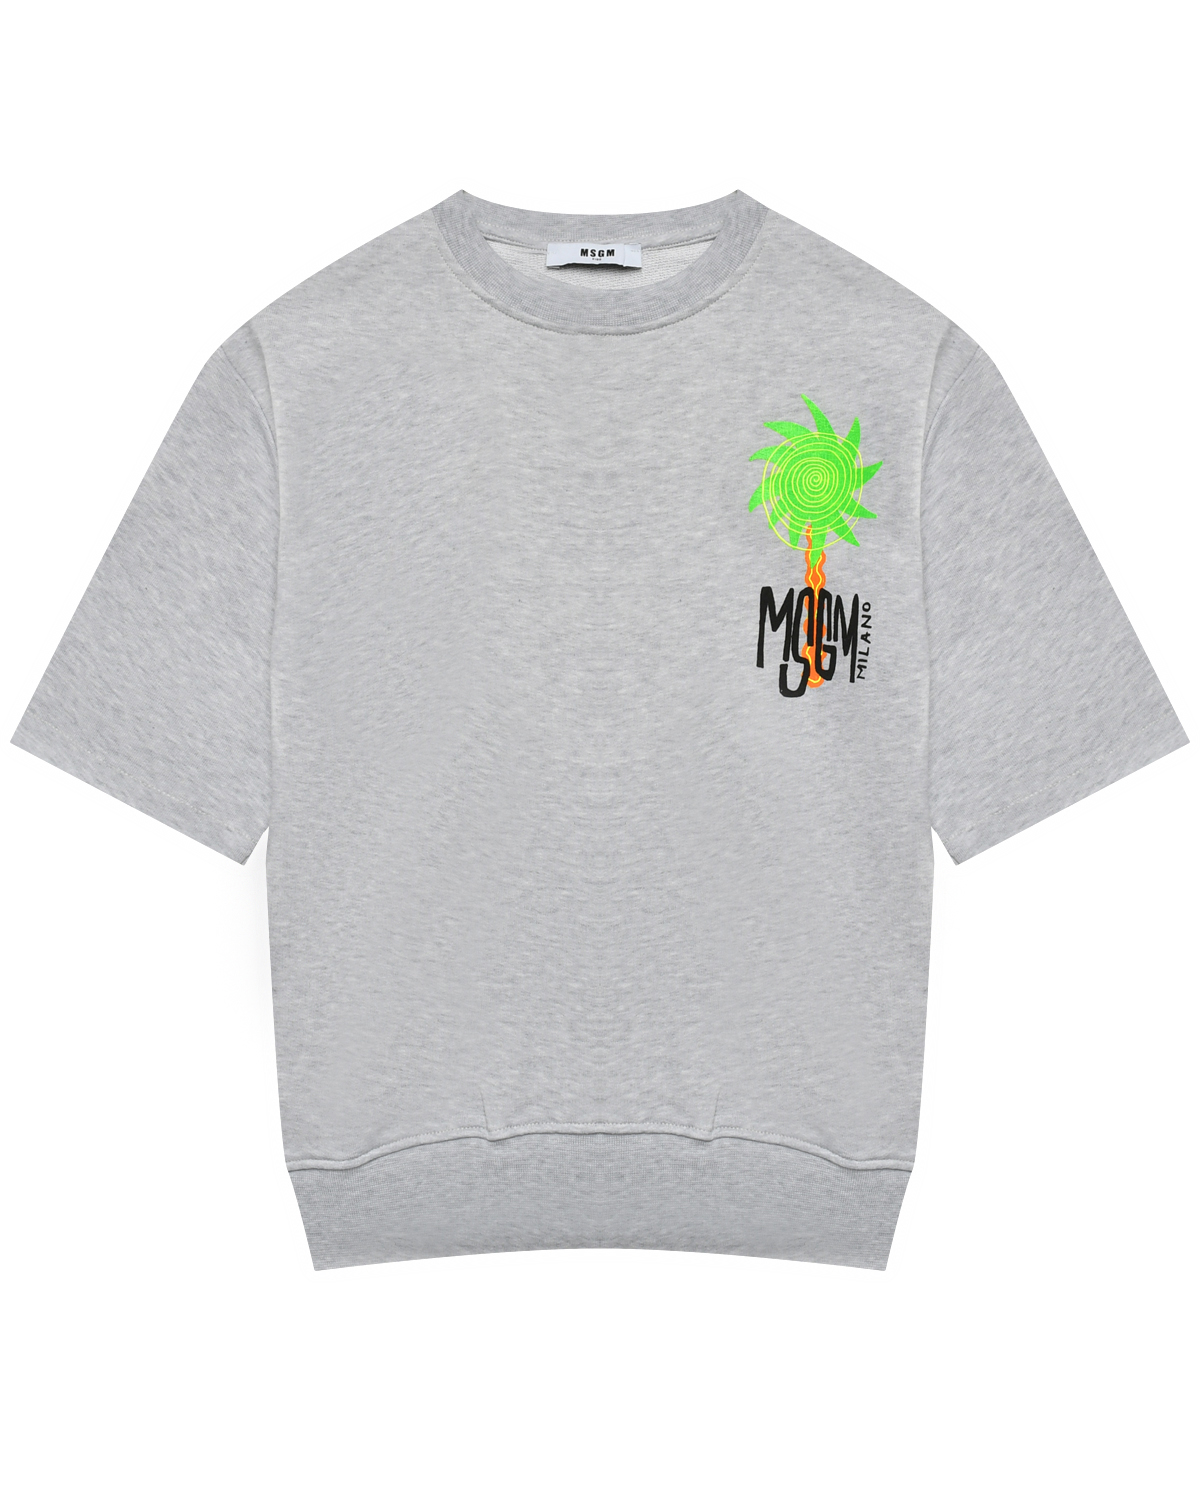 Свитшот с логотипом принт пальмы, серый MSGM свитшот с логотипом вышитым бусинками msgm